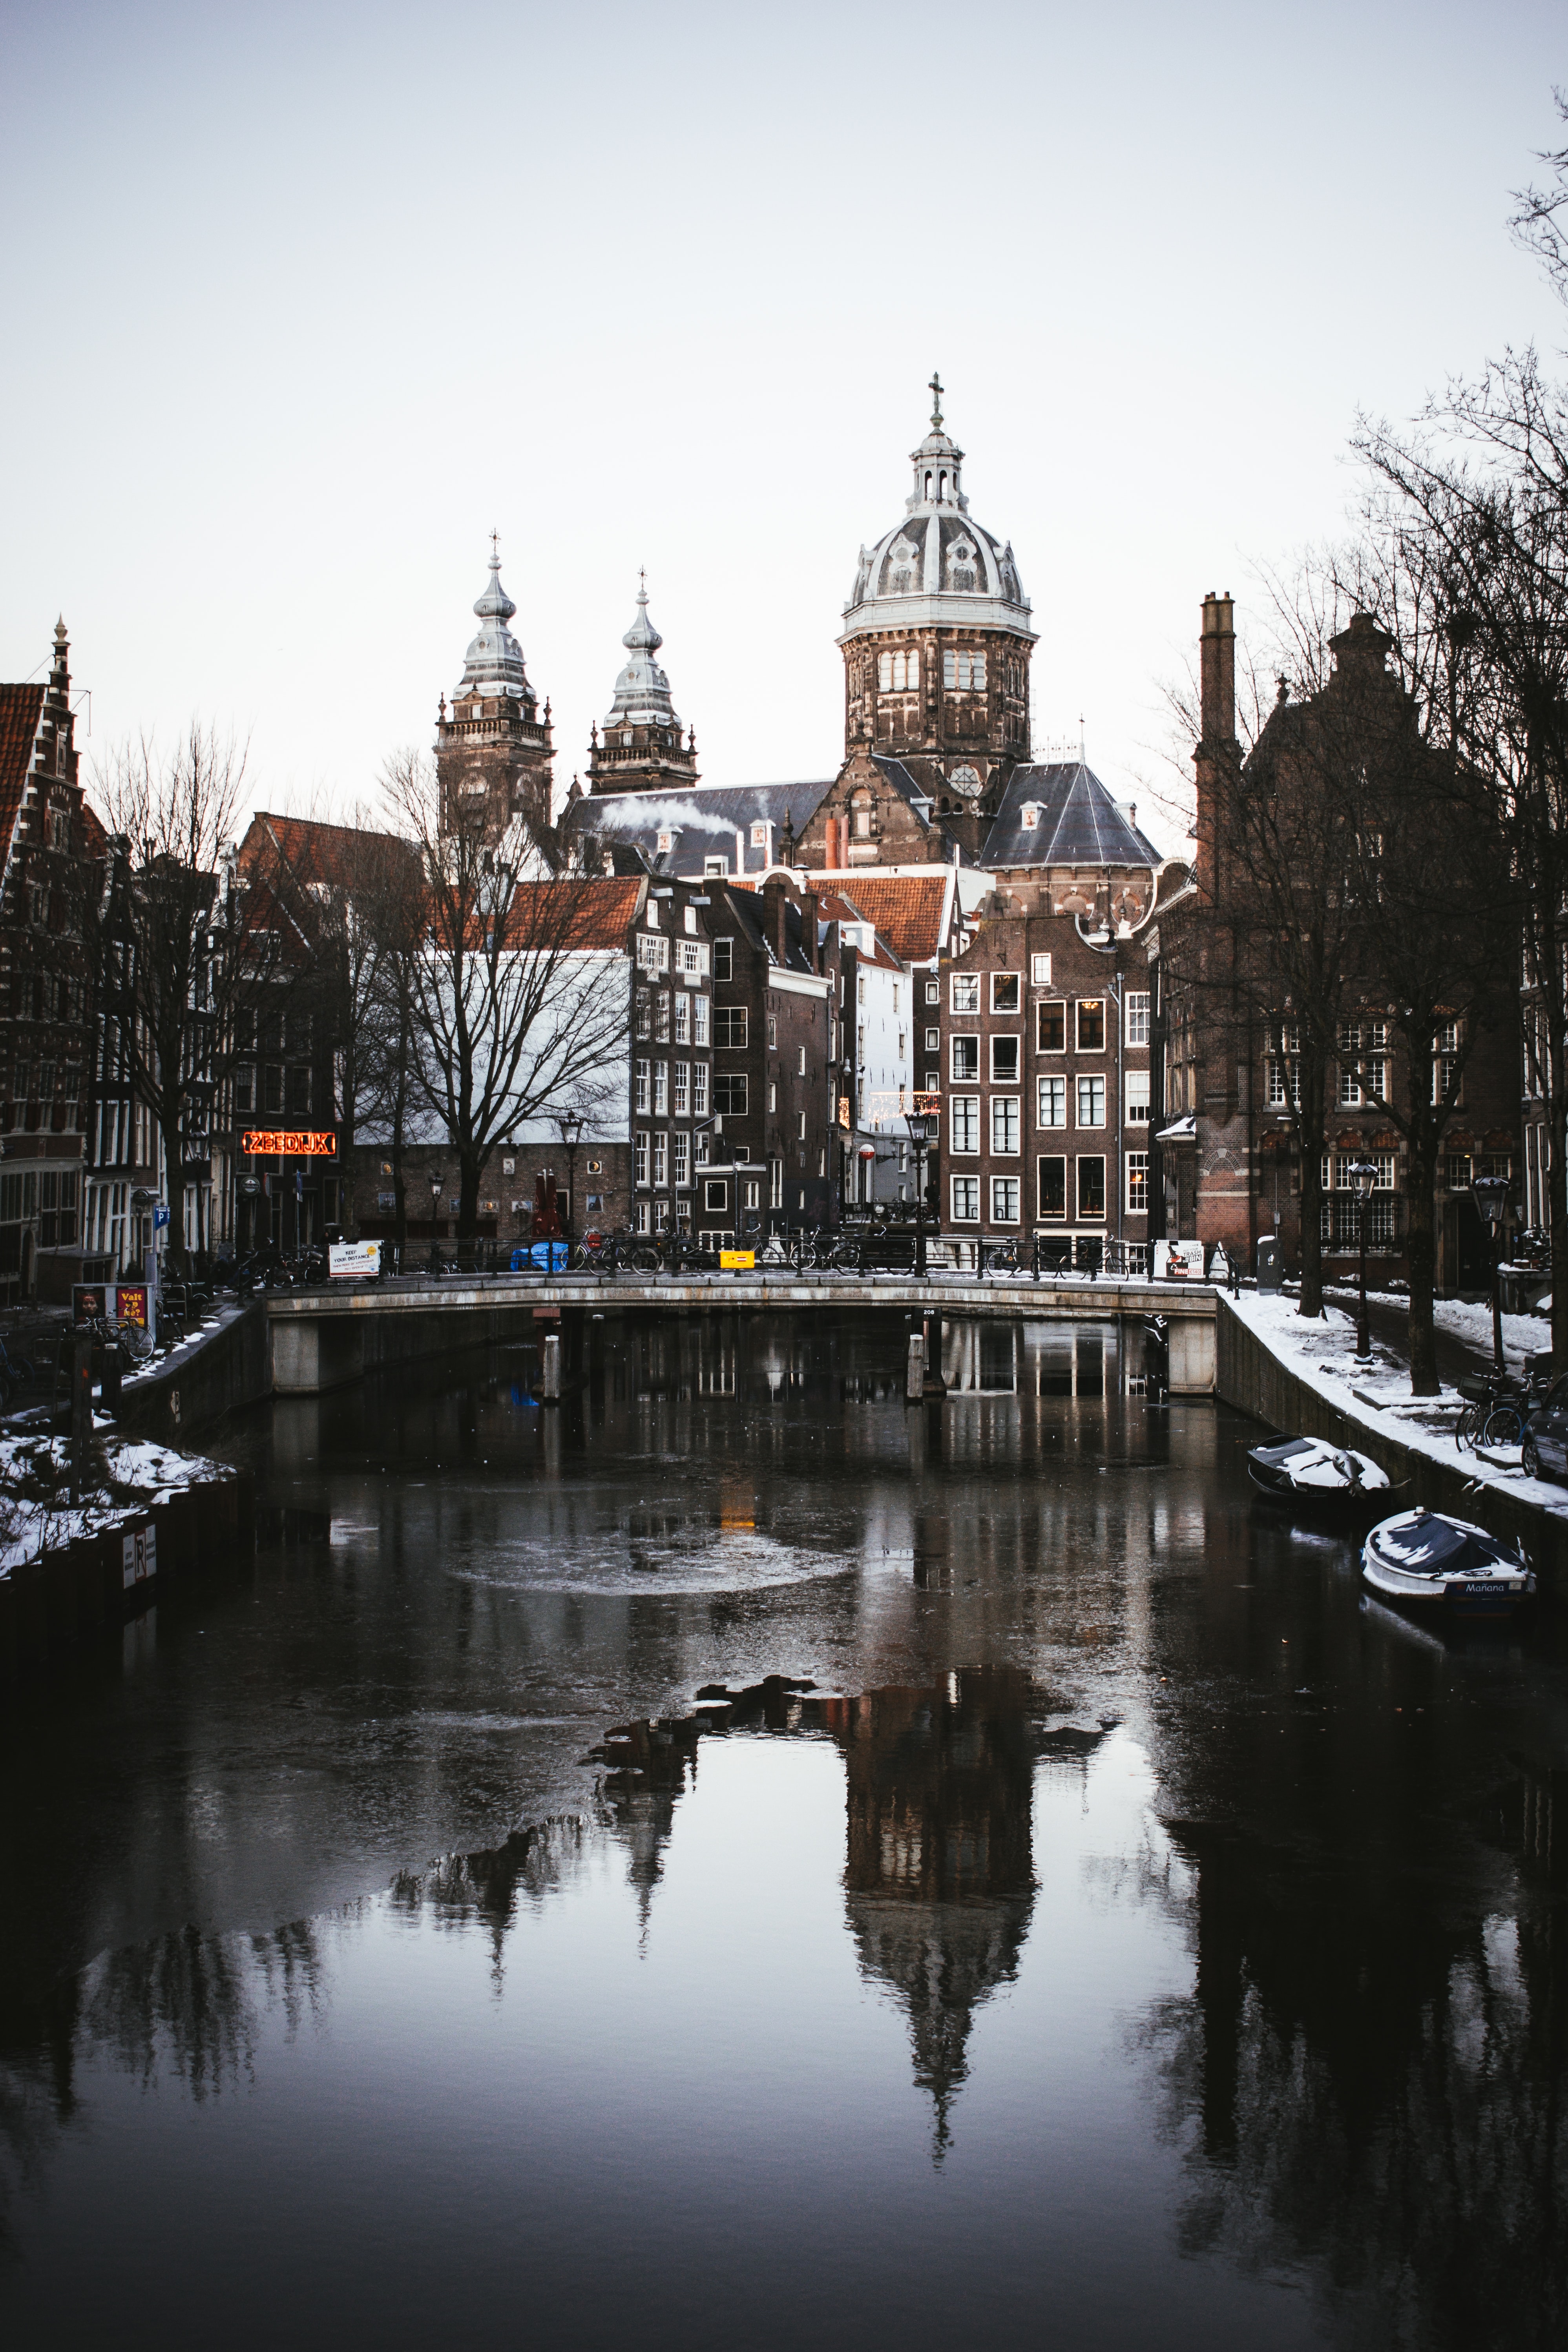 Популярные заставки и фоны Амстердам на компьютер